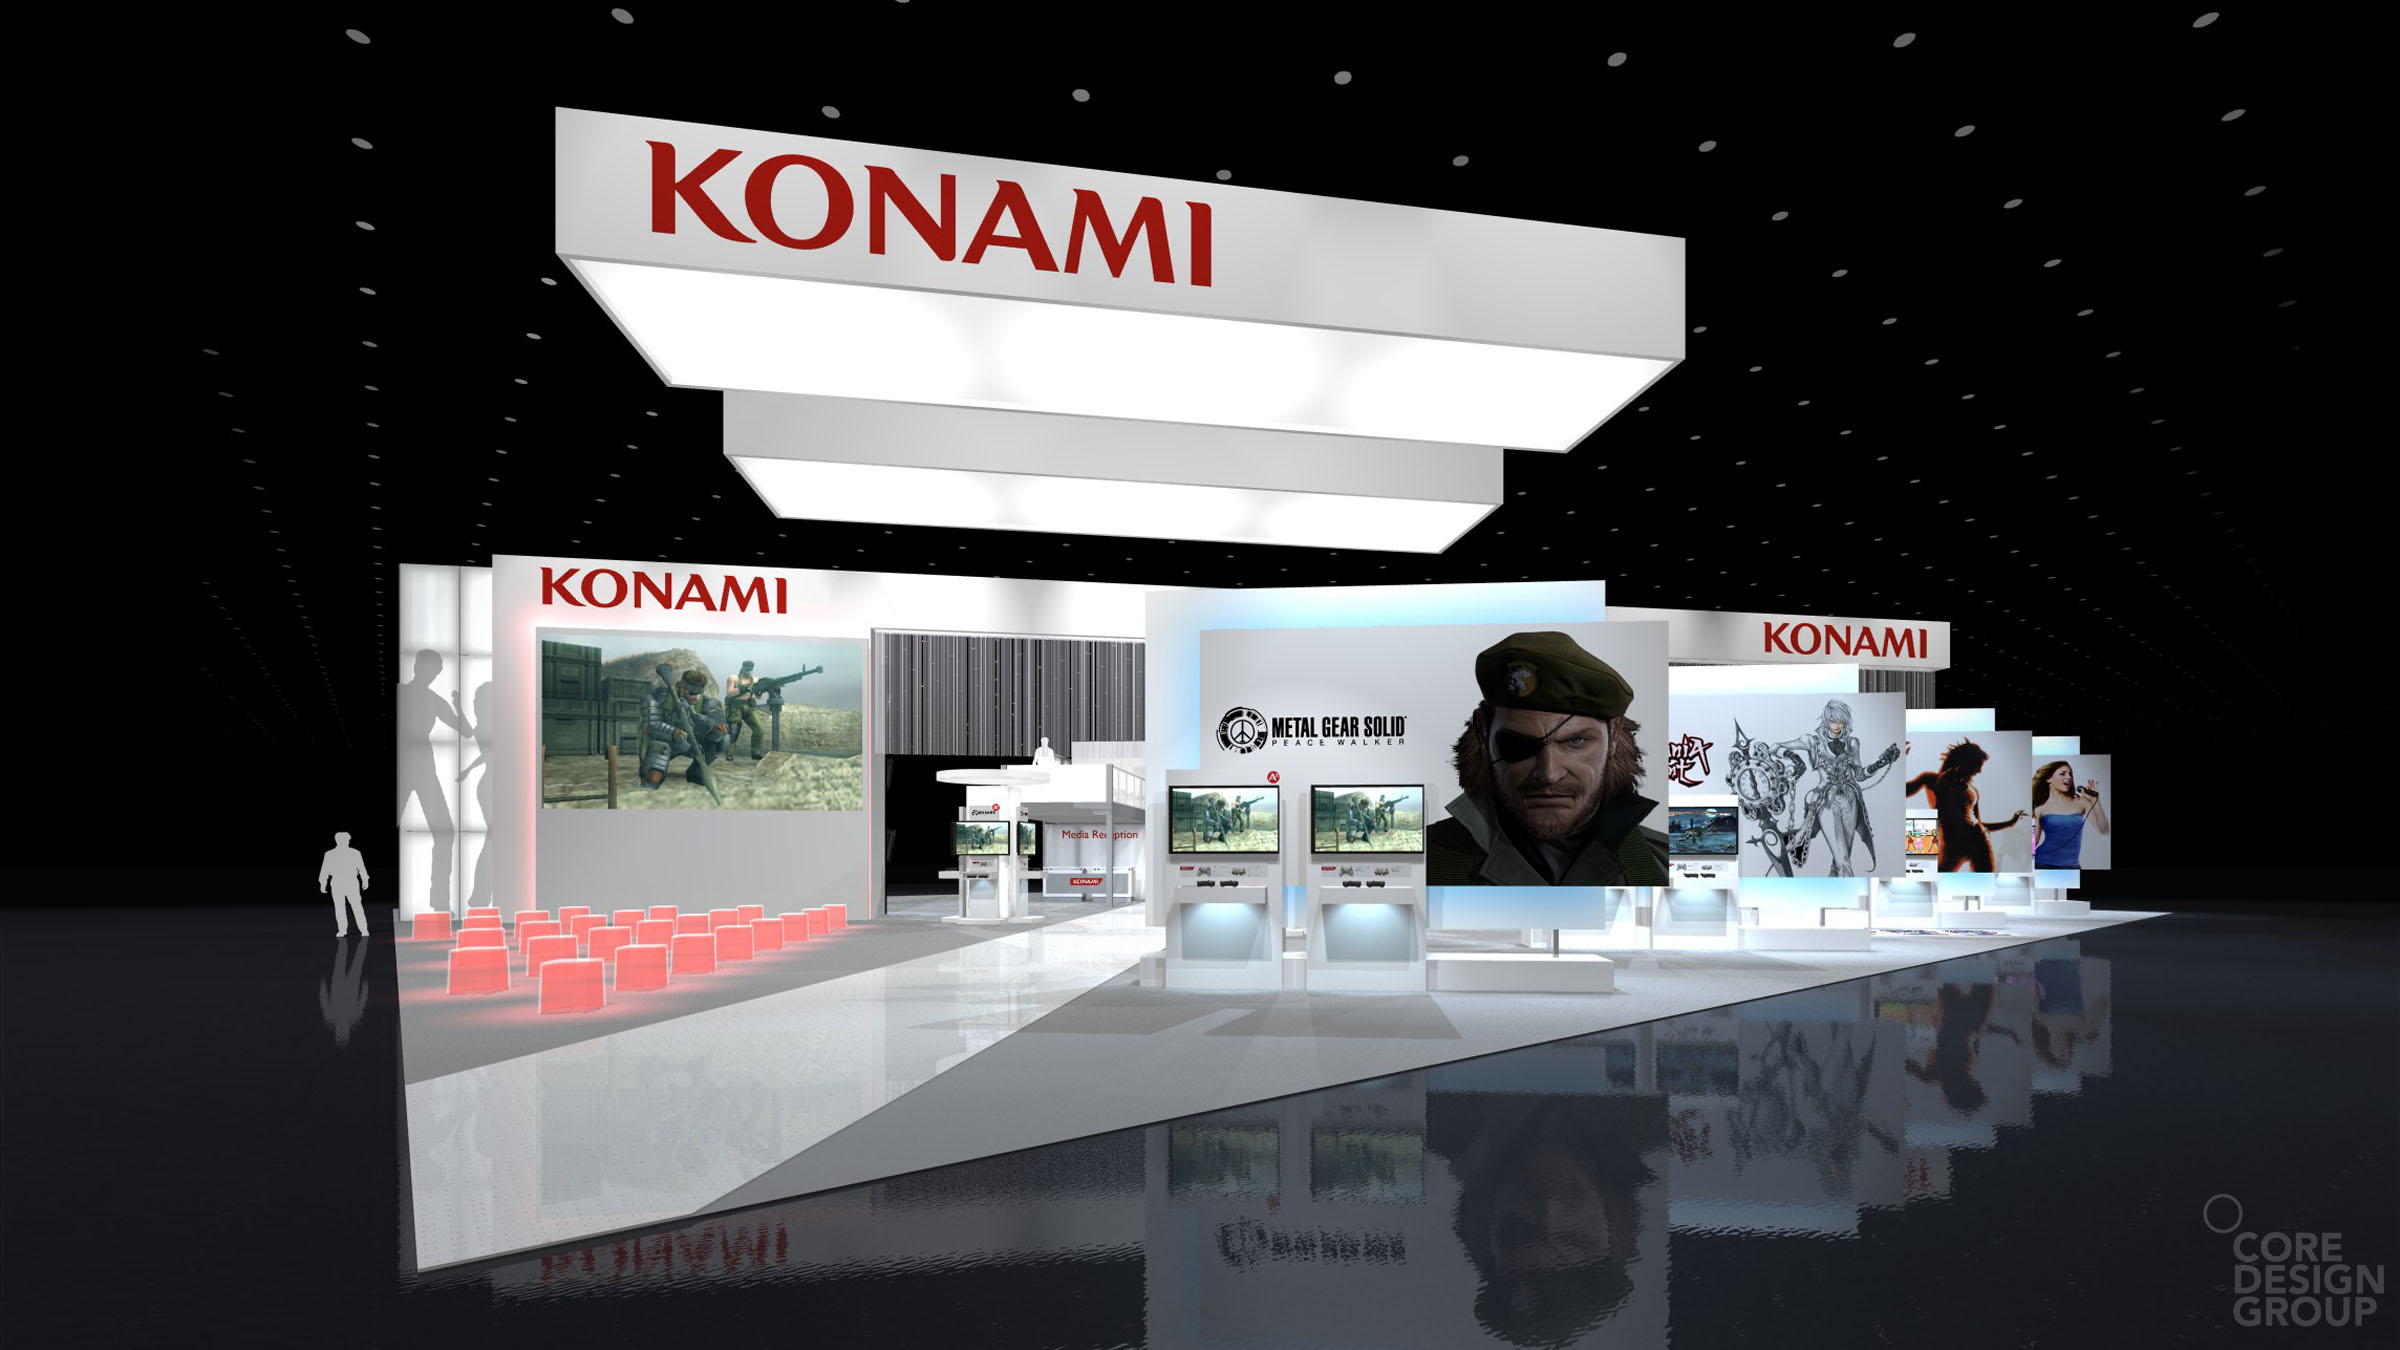 [70+] Konami Wallpaper | WallpaperSafari.com